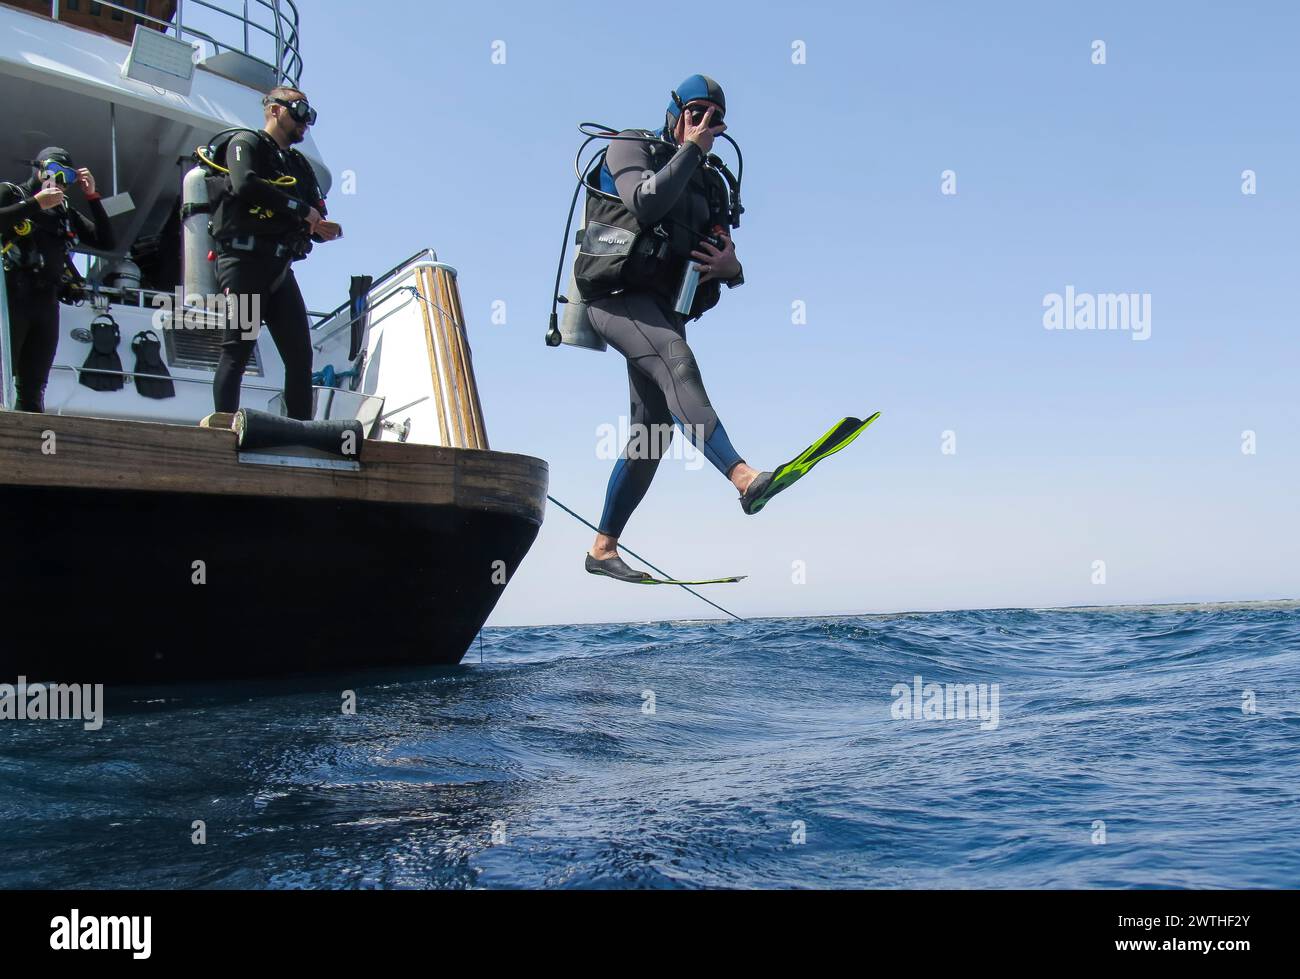 Taucher springt vom Tauchschiff ins Wasser, Rotes Meer, Ägypten Banque D'Images